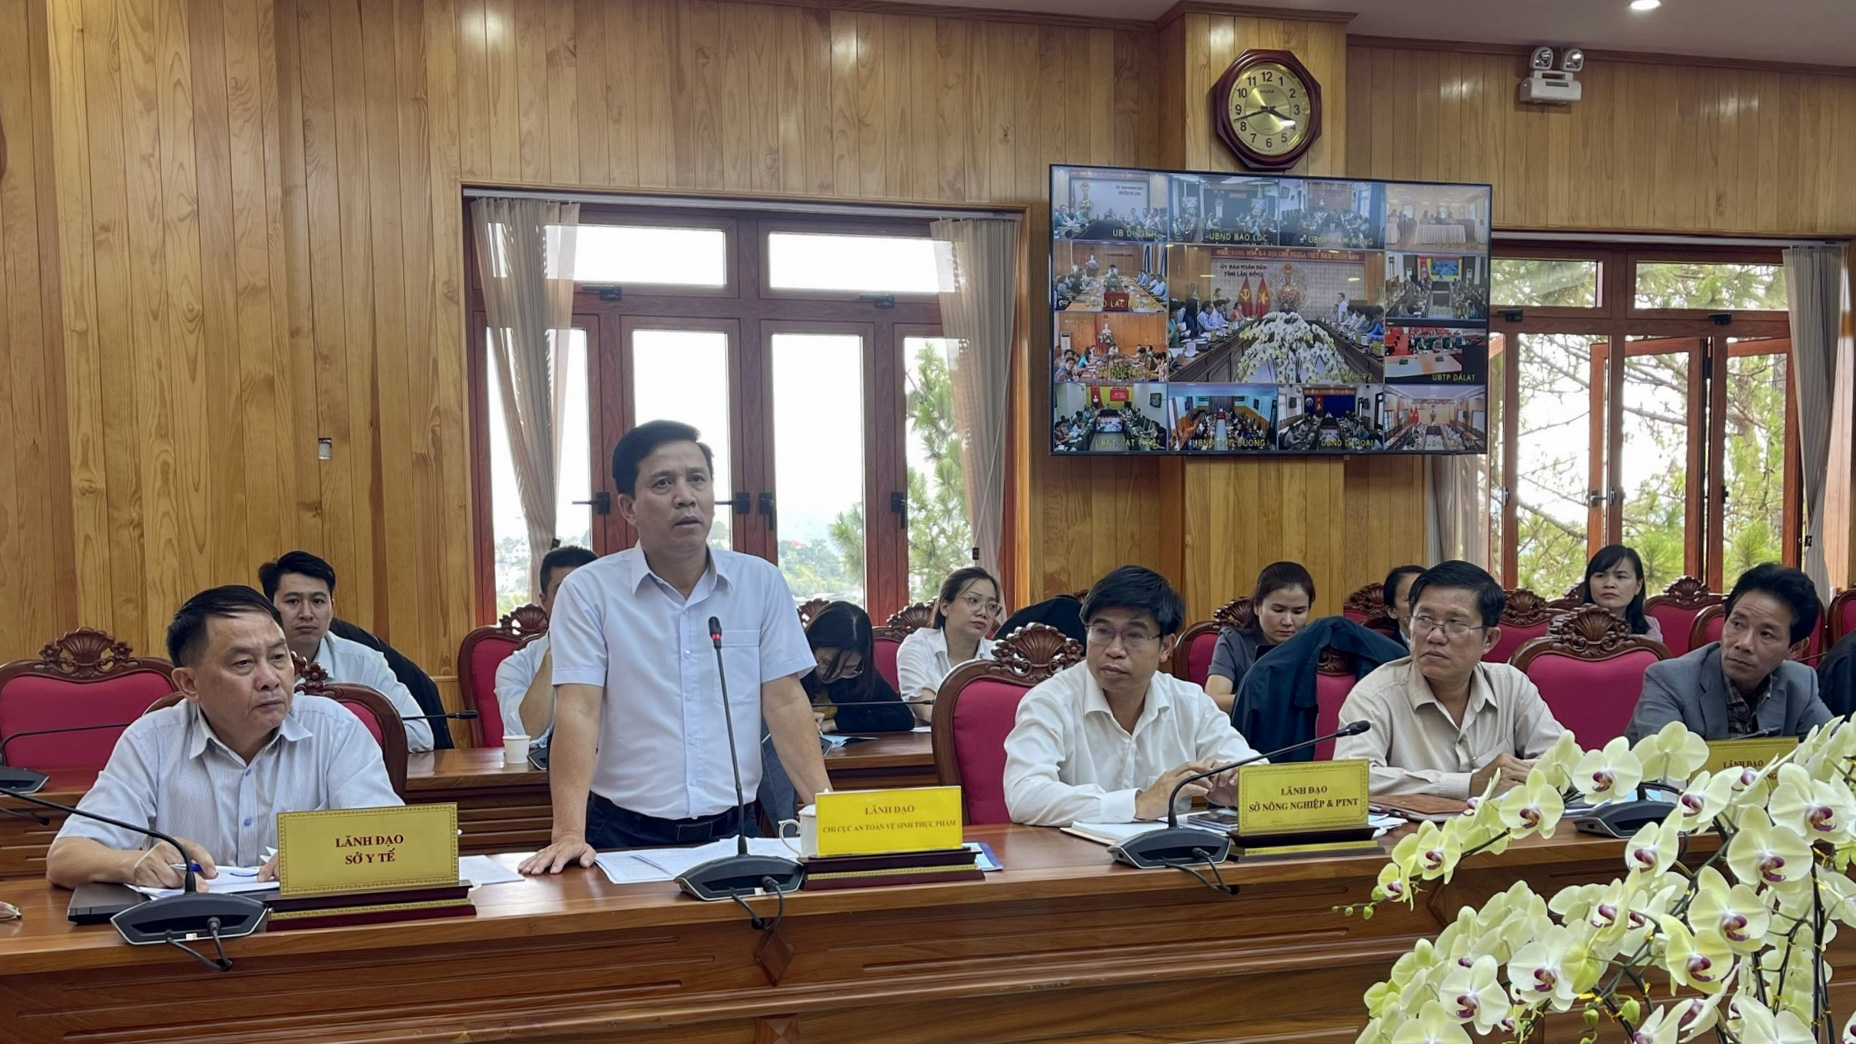 Ông Đỗ Hoàng Hải - Chi cục trưởng Chi cục Vệ sinh ATTP tỉnh Lâm Đồng phát biểu về nhiệm vụ chuyên môn của đơn vị